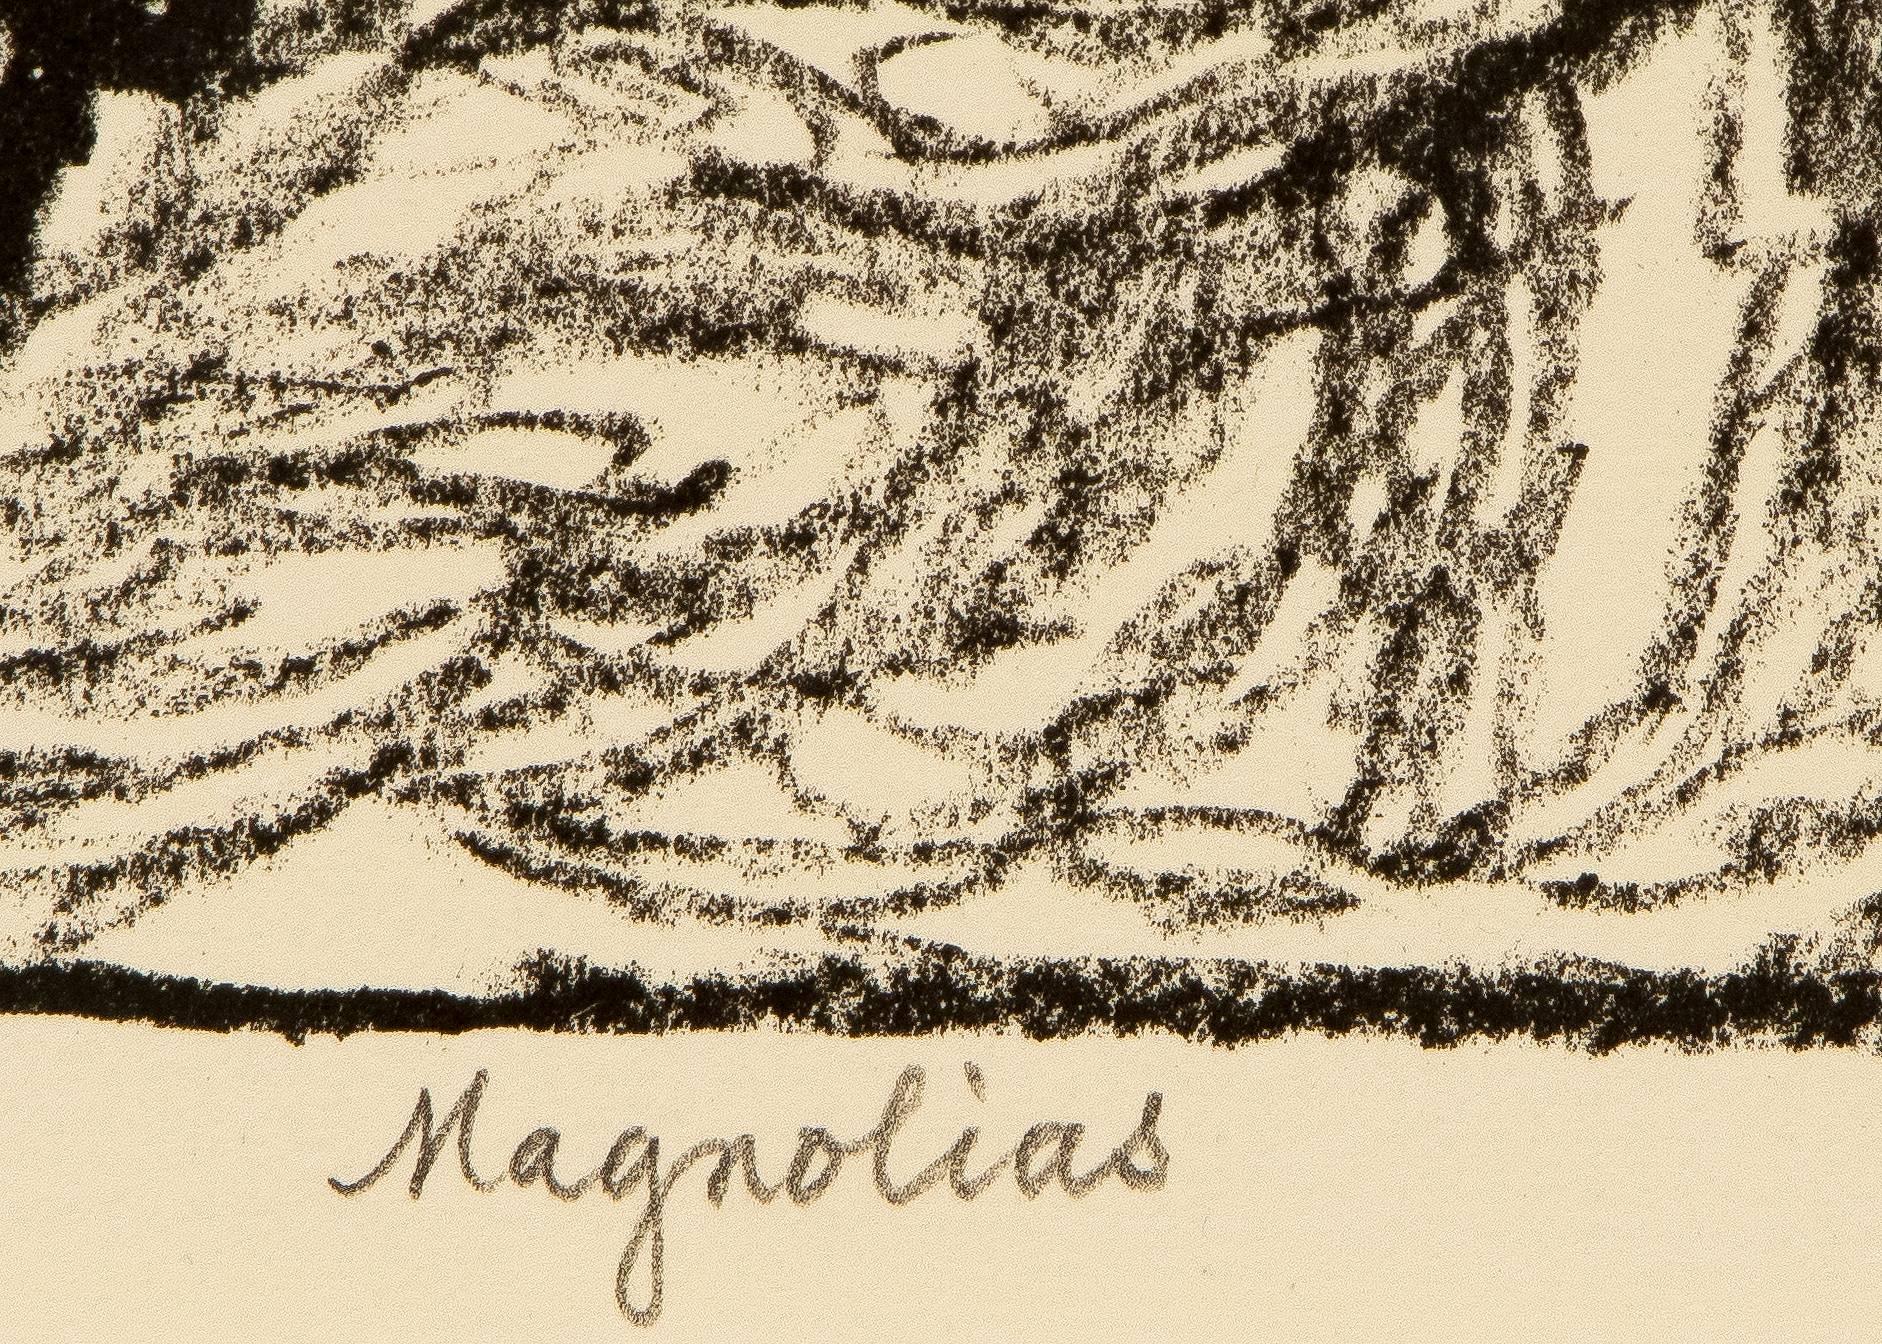 Magnolias 1